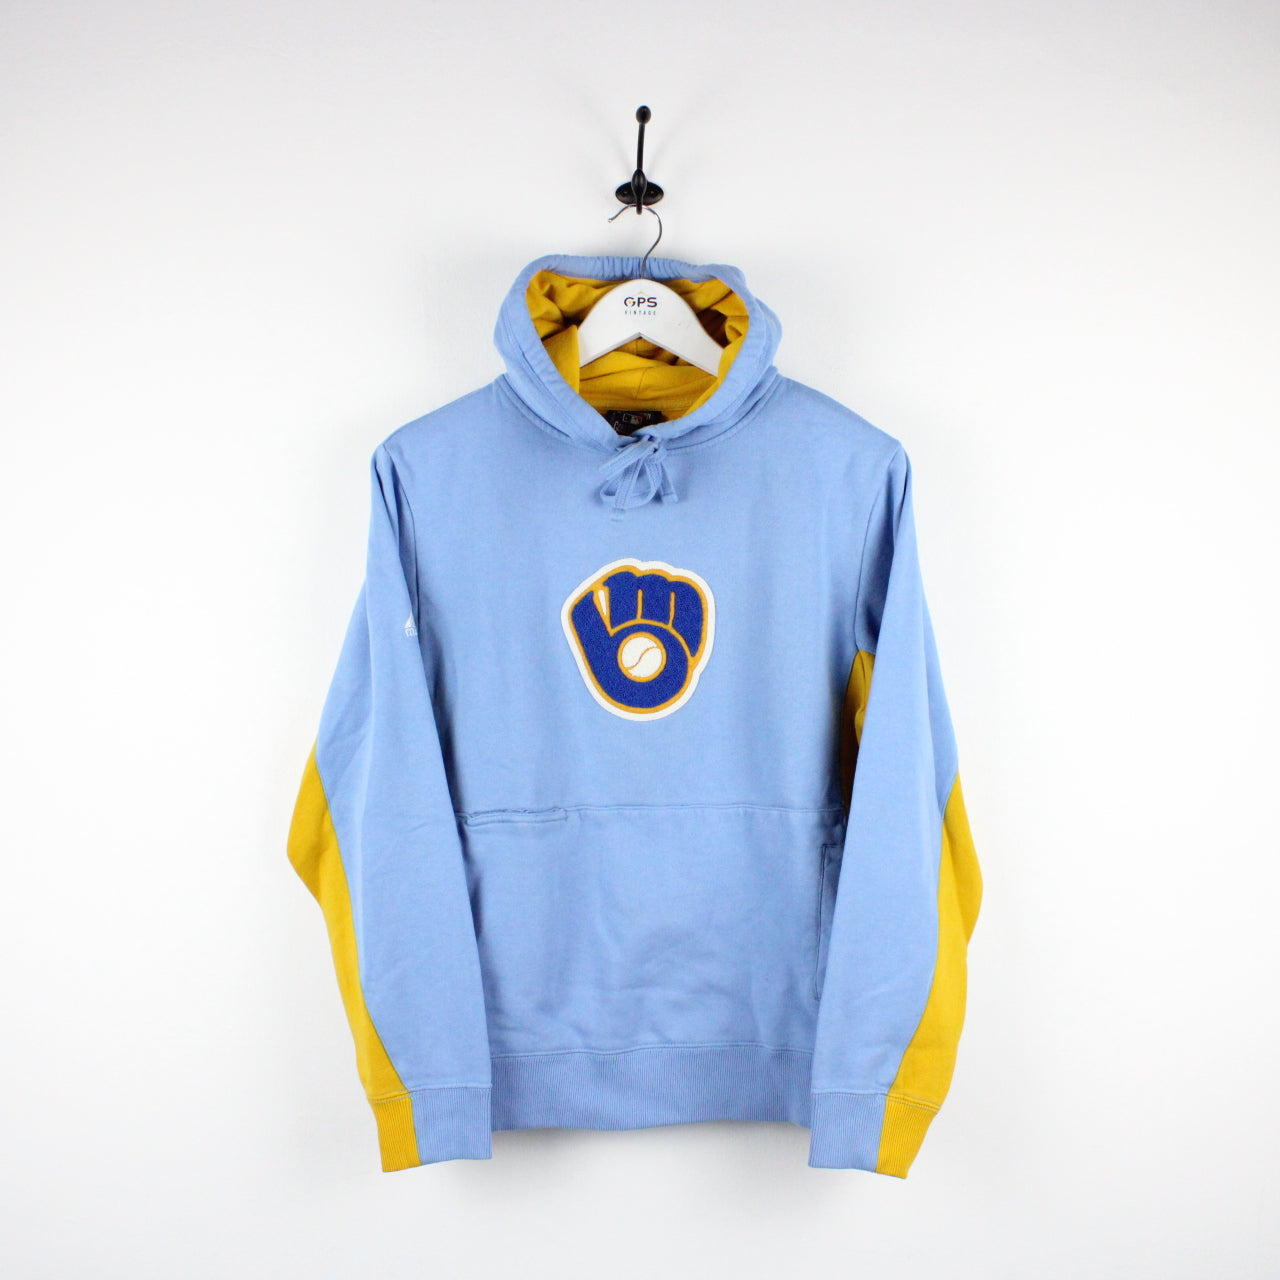 Vintage Milwaukee Brewers hoodie, MLB embroidered sweatshirt - large, blue